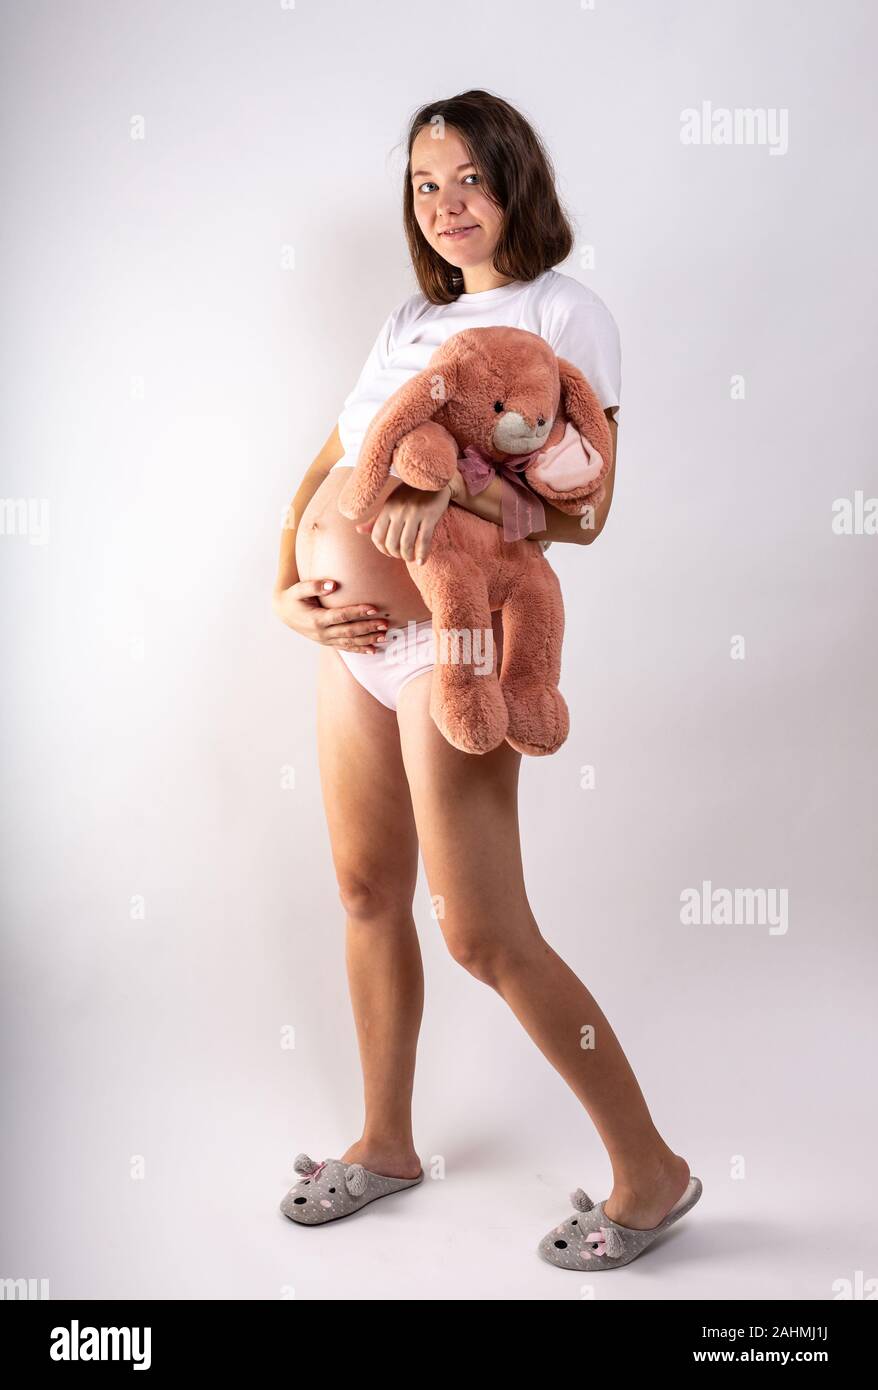 Close-up schwangeren Bauch mit Hase Spielzeug. Schöne schwangere Frau. Schwangerschaft, Elternschaft, Vorbereitung und Erwartung Konzept. Stockfoto